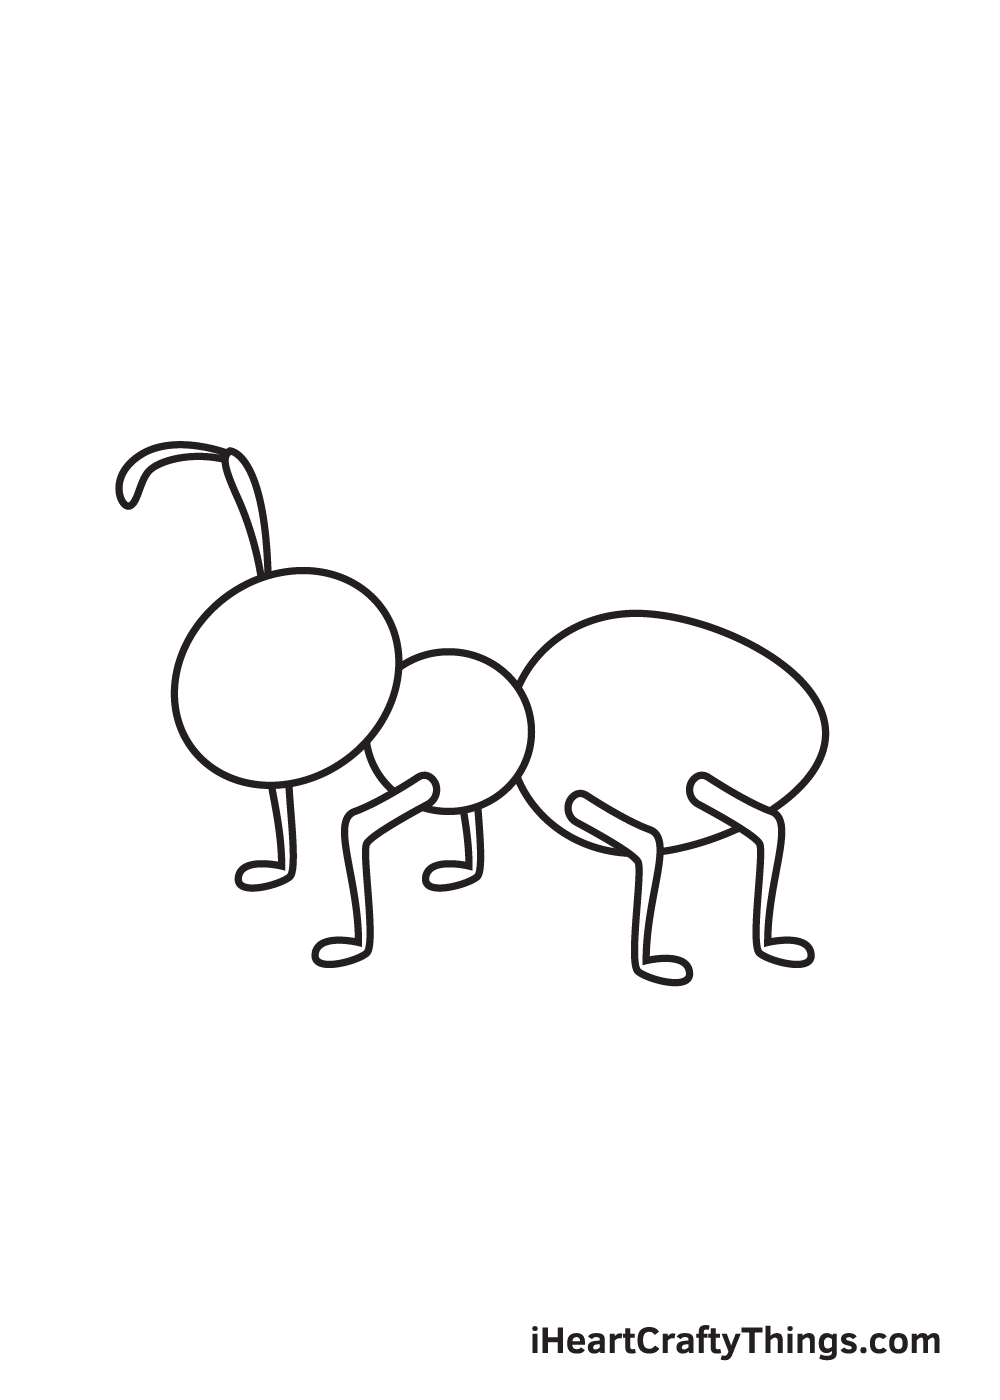 Ant DRAWING – STEP 7 - Hướng dẫn chi tiết cách vẽ con kiến đơn giản với 9 bước cơ bản